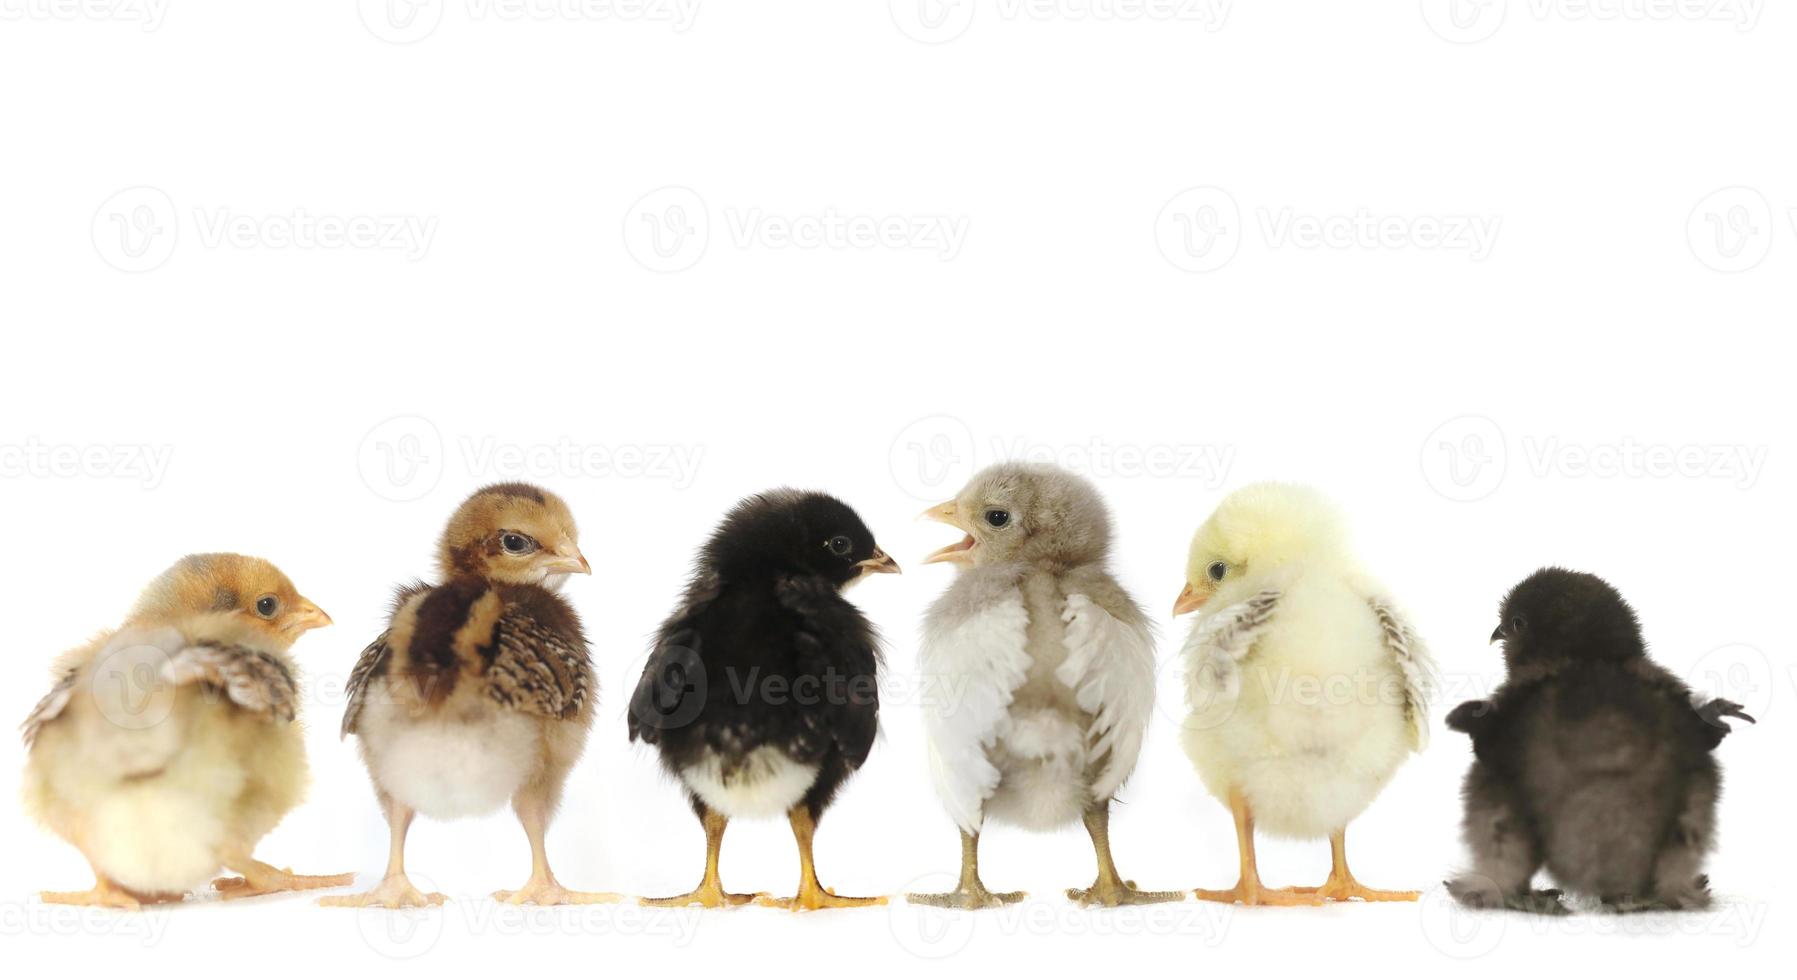 många baby kyckling kycklingar uppställda på vitt foto